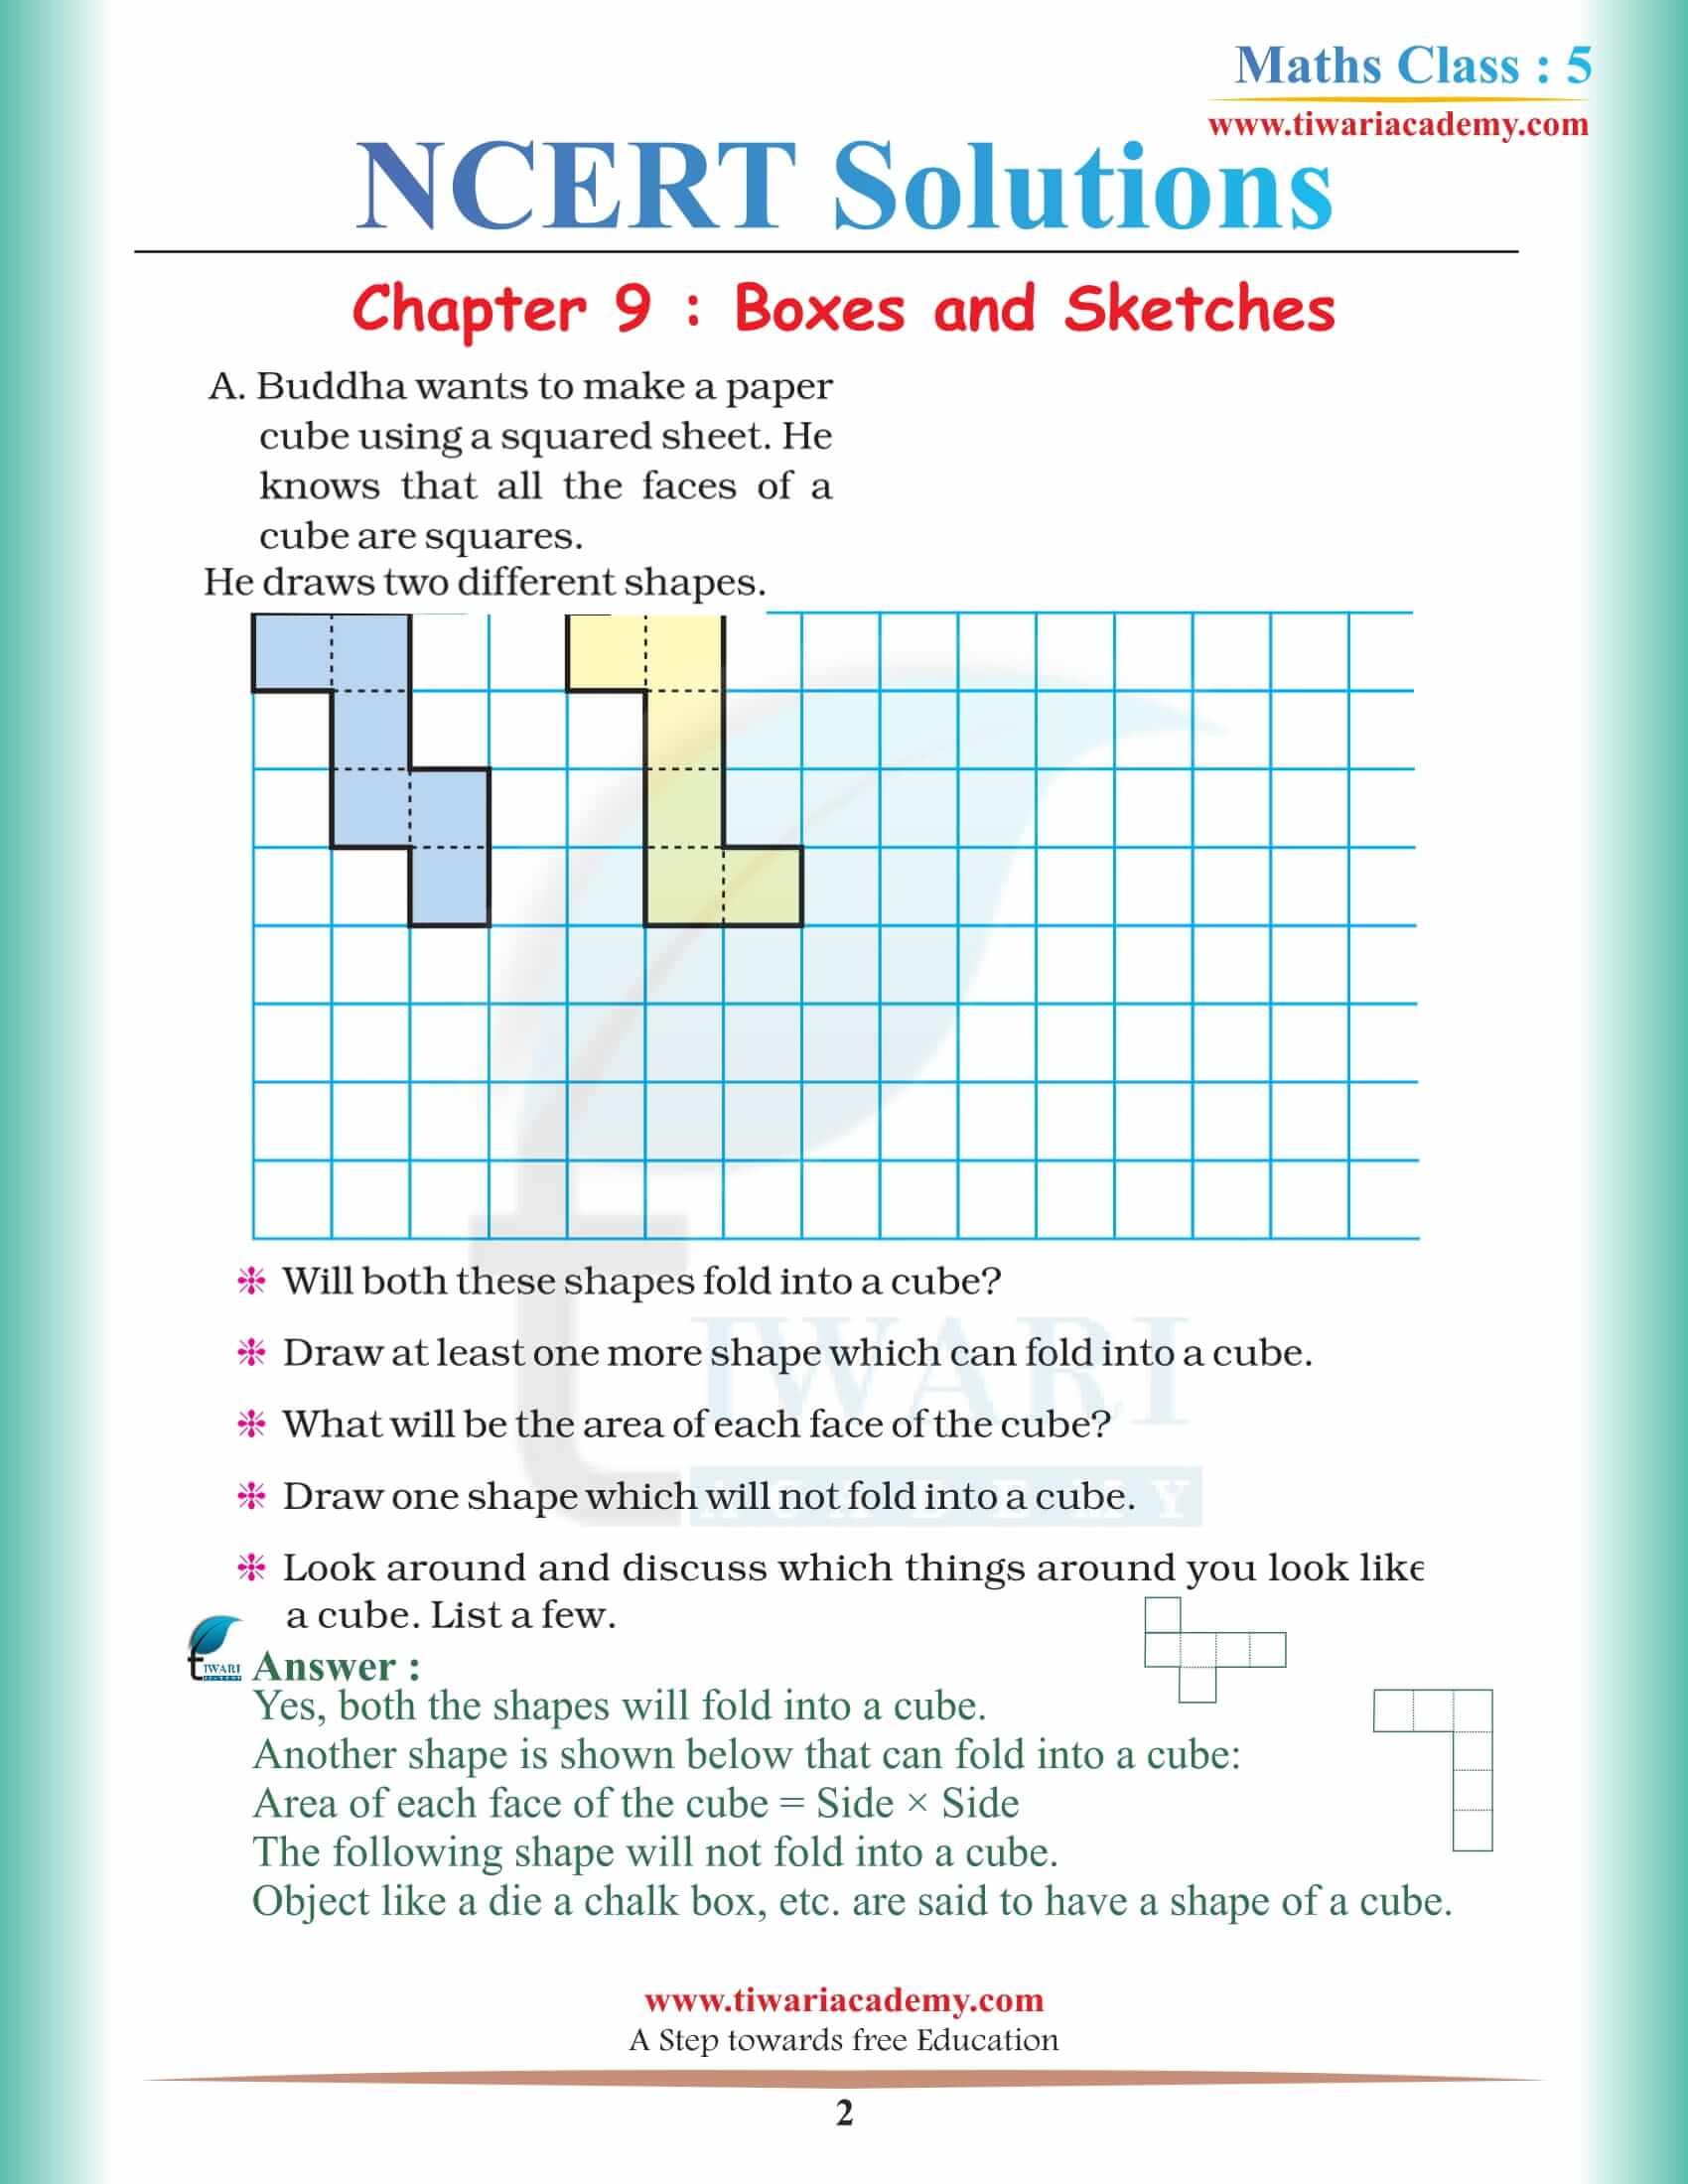 NCERT Solutions for Class 5 Maths Chapter 9